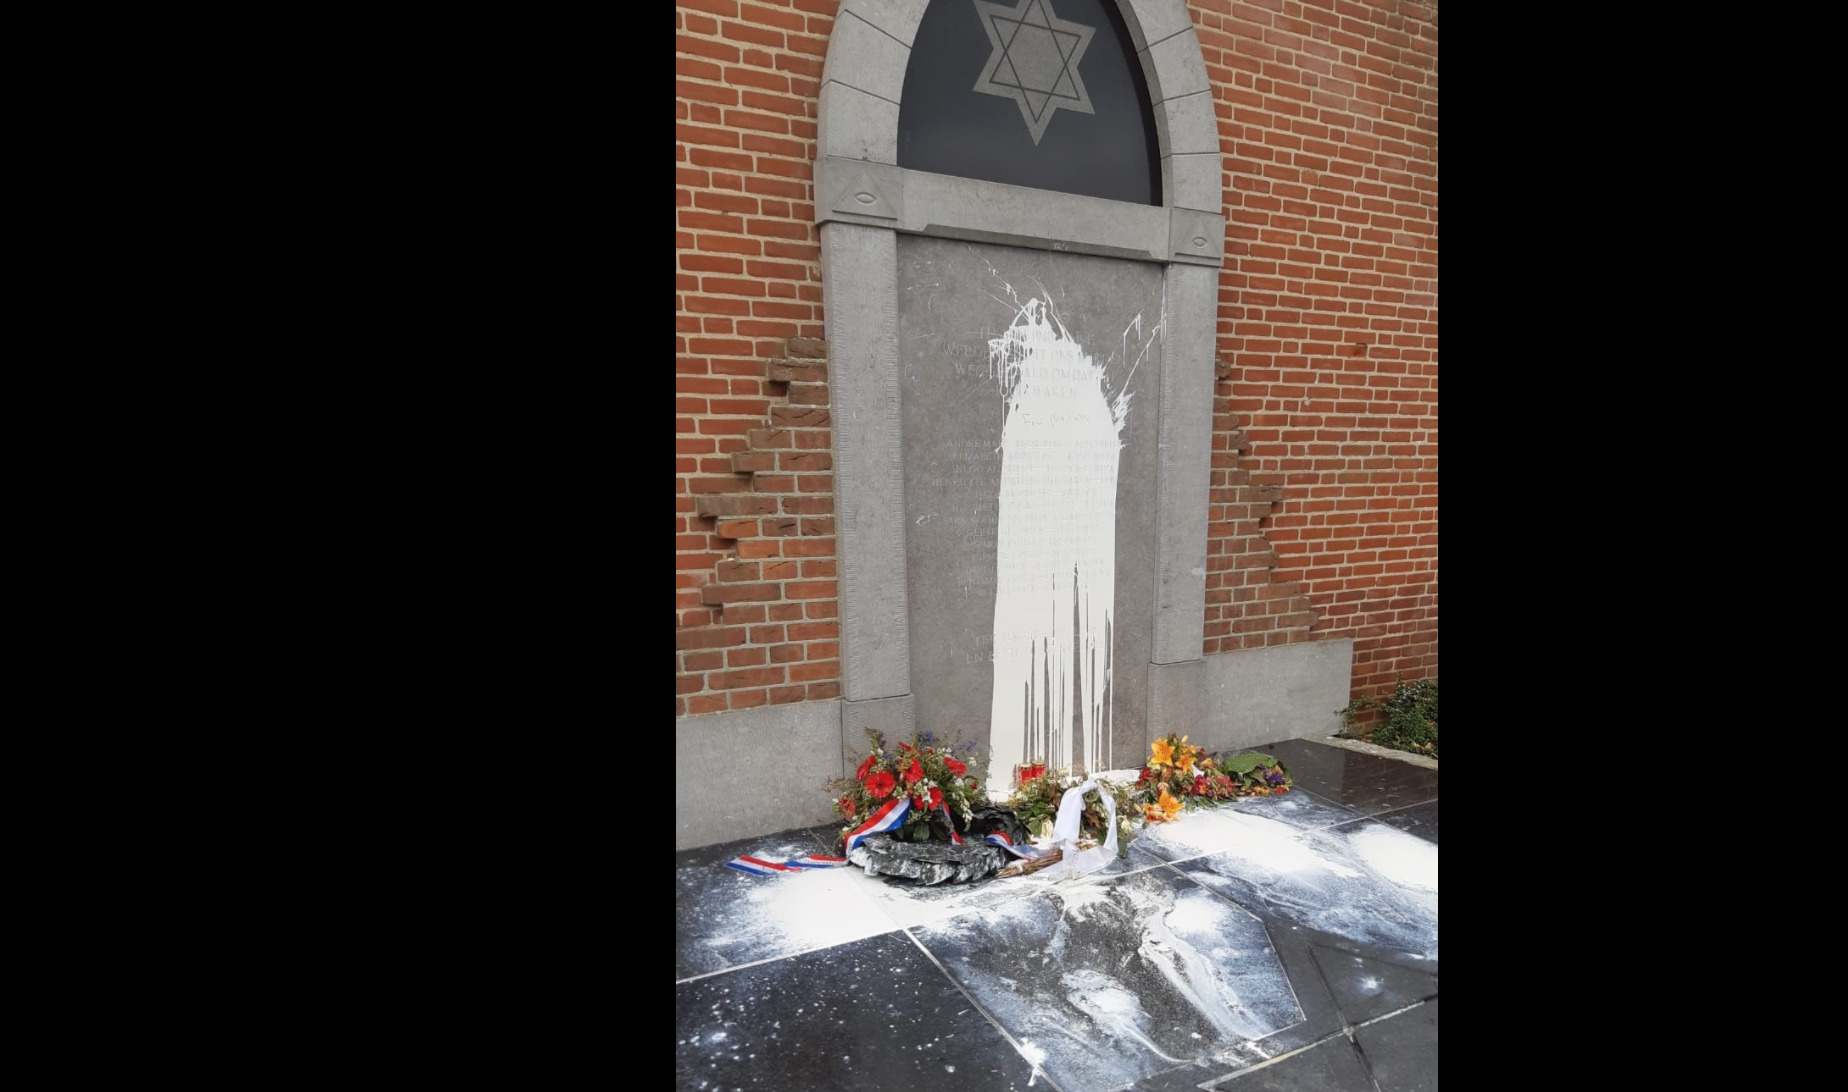 Joods monument Cuijk beklad, oproep tot veroordeling aan burgemeester